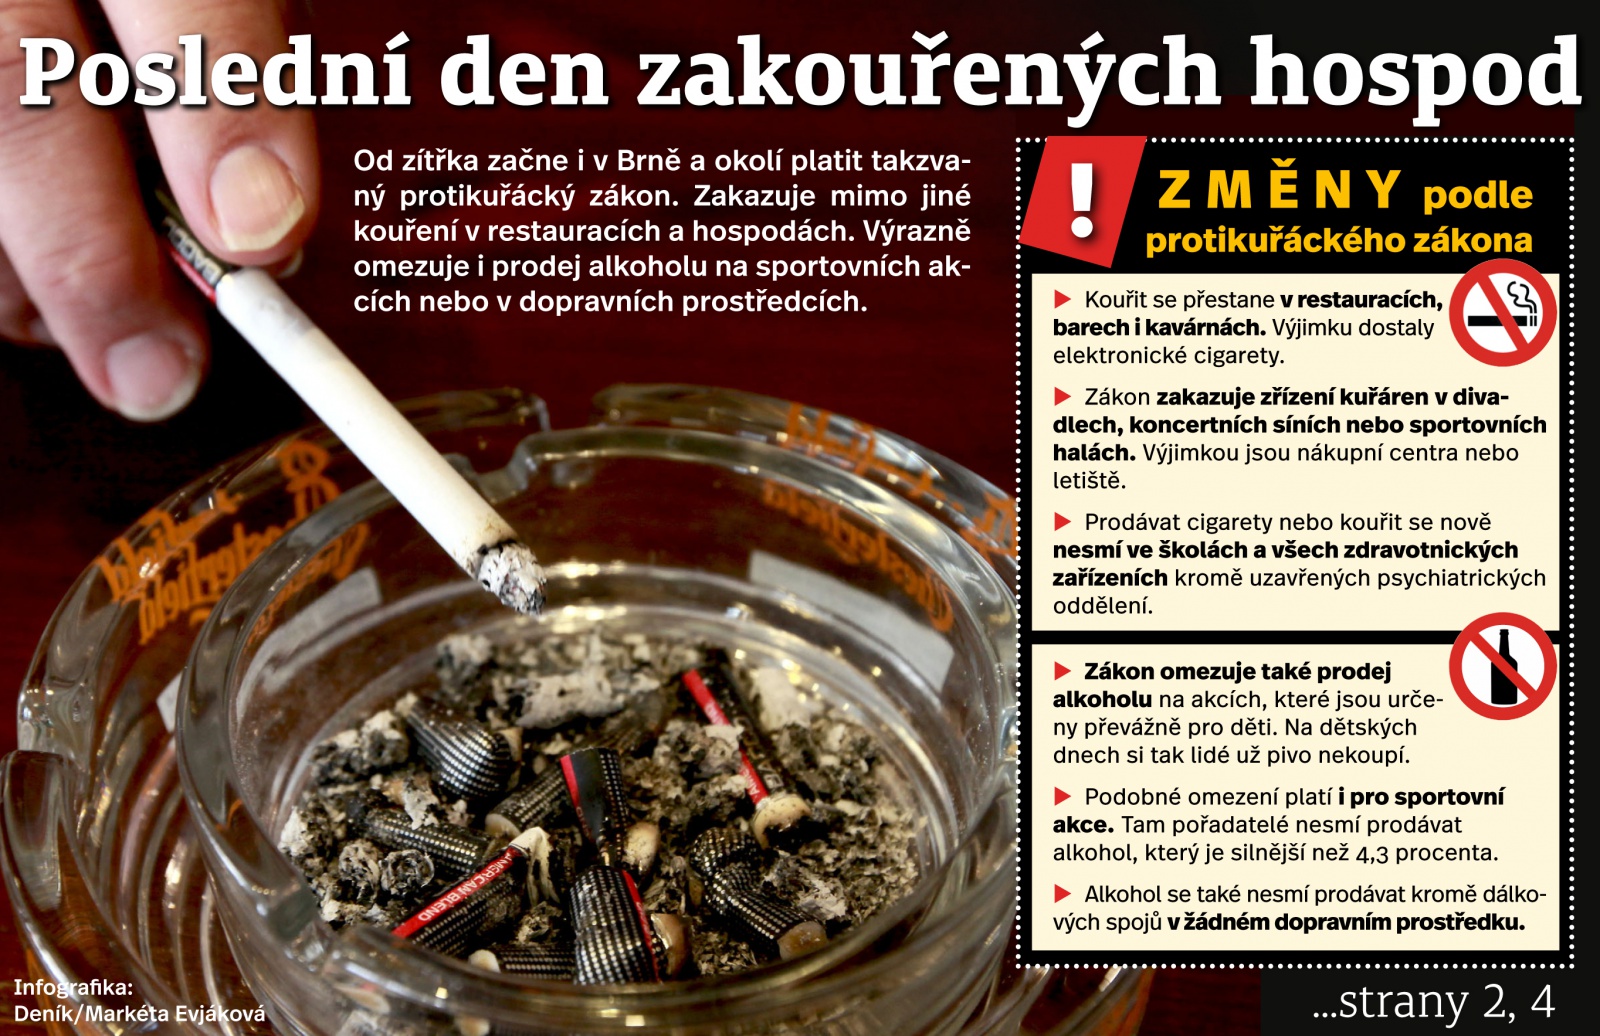 Poslední den kouření v hospodách: Kuřáci mi říkali, že chodit nebudou,  tvrdí muž - Znojemský deník